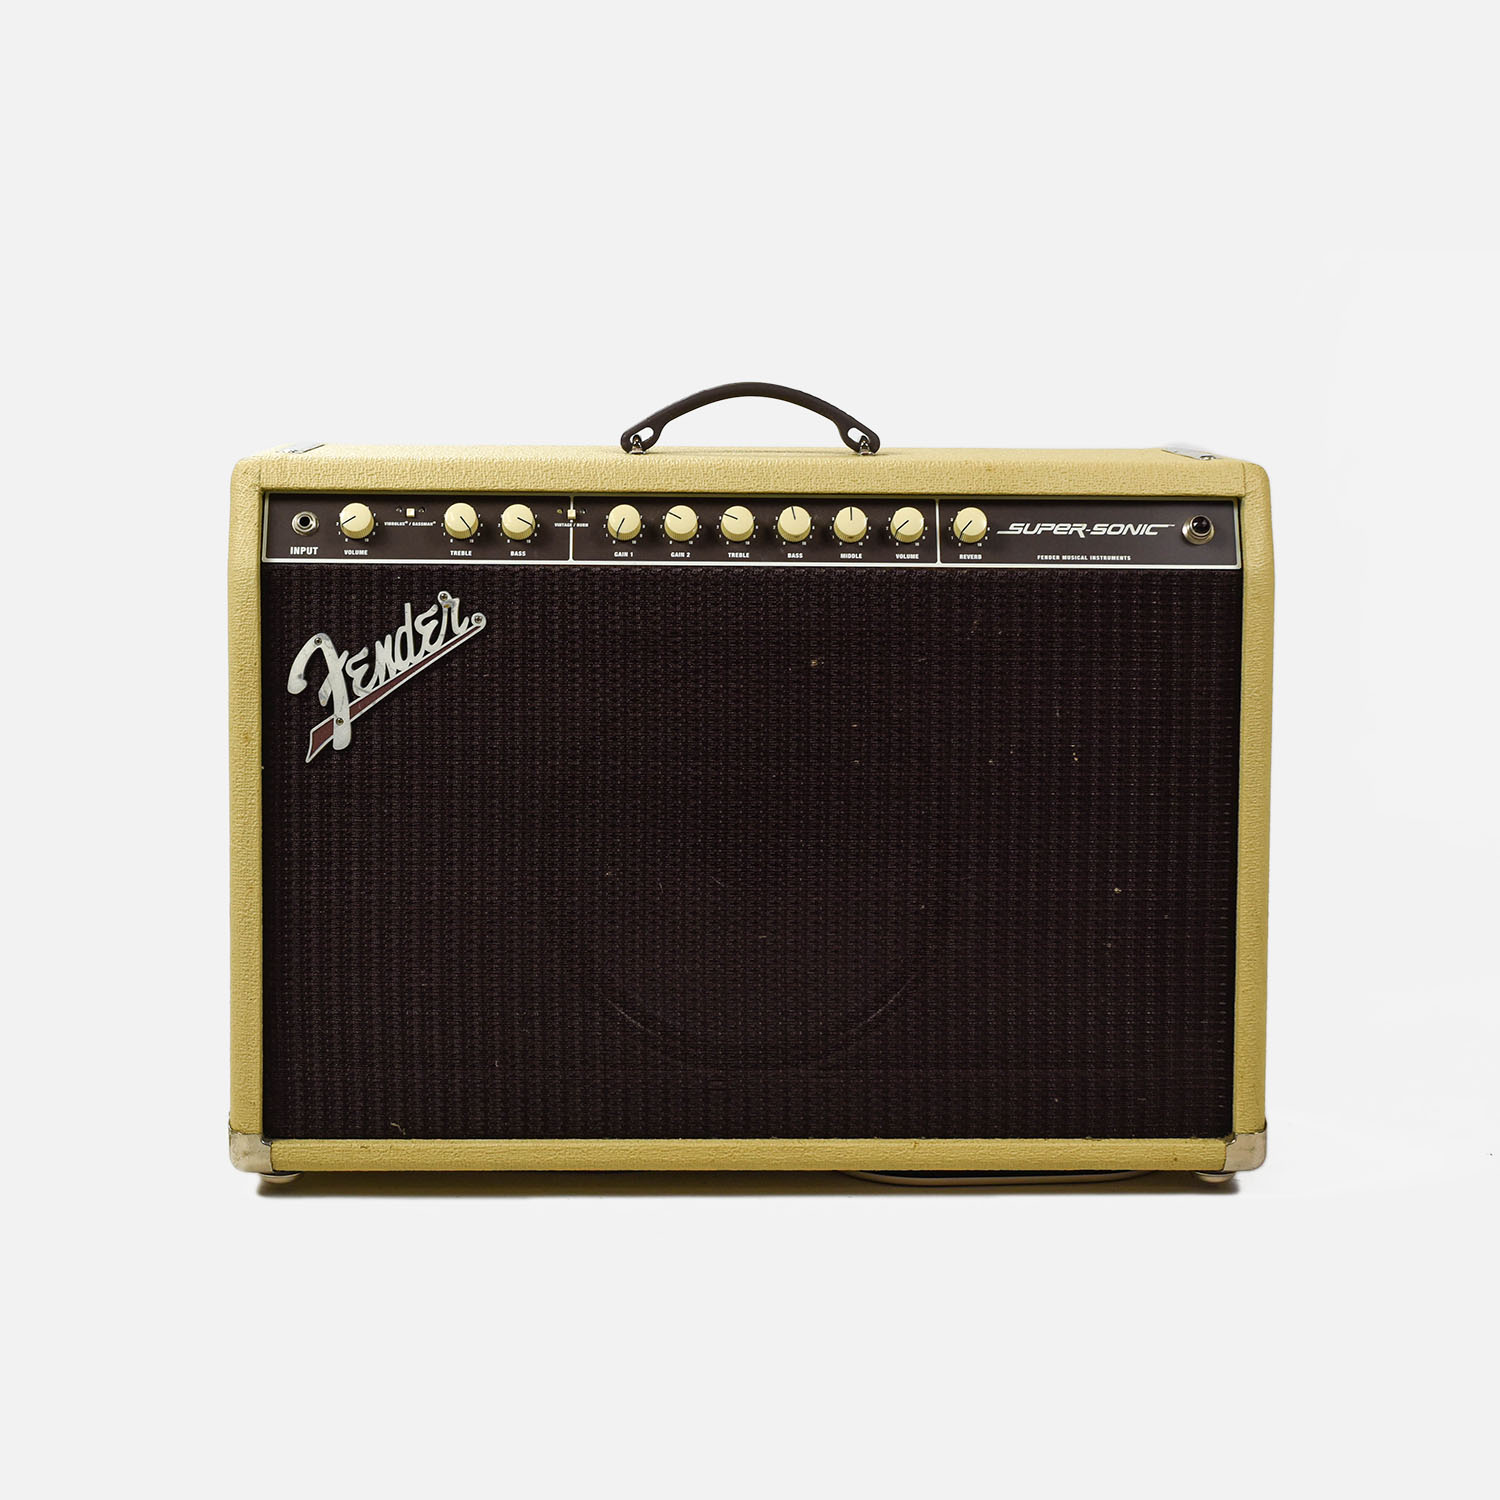 Blond Fender Super Sonic Tube 22-Watt Amplifier